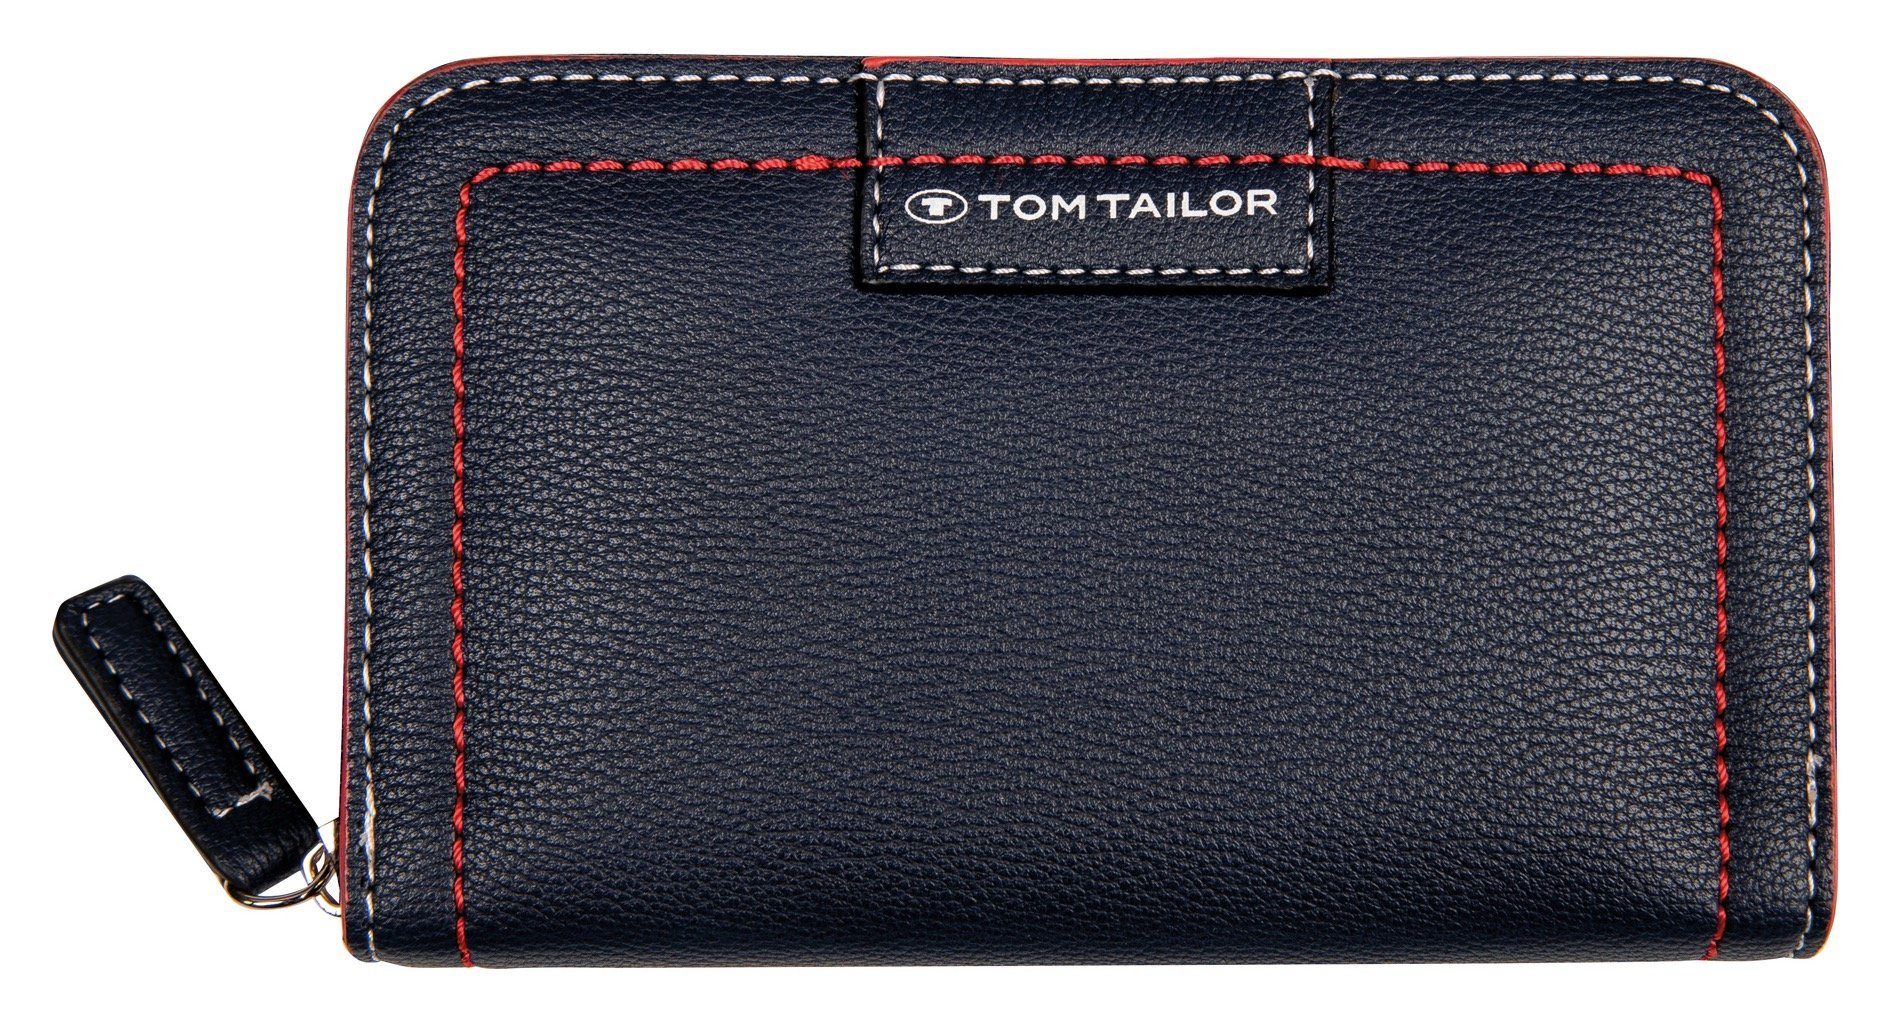 TOM TAILOR Geldbörse Miri Mare Medium zip wallet, im praktischen Design marine